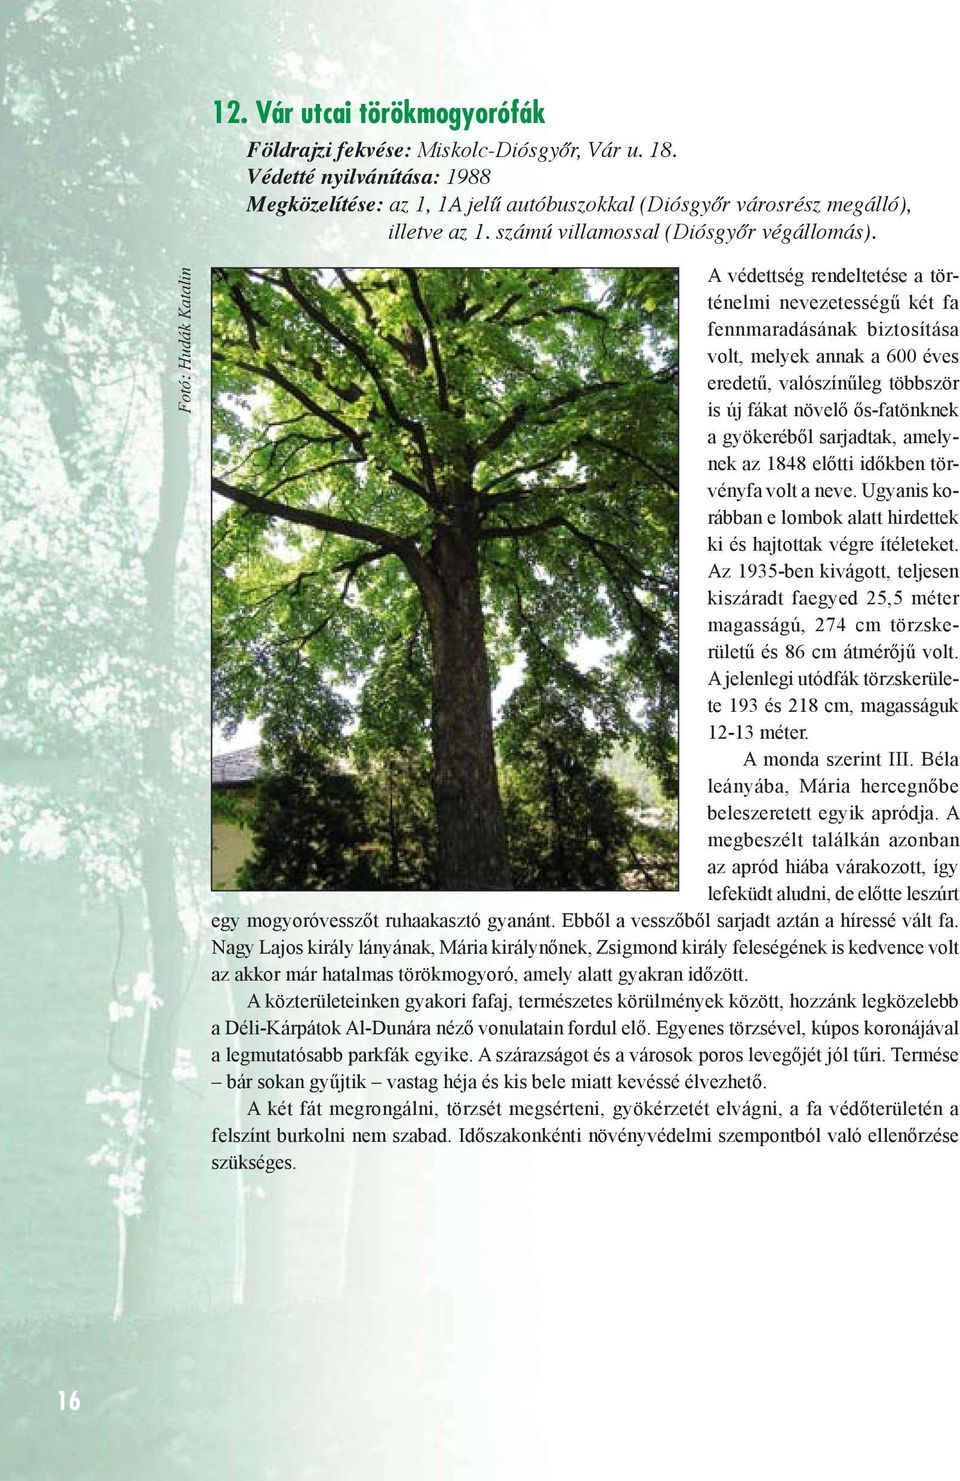 Fotó: Hudák Katalin A védettség rendeltetése a történelmi nevezetességű két fa fennmaradásának biztosítása volt, melyek annak a 600 éves eredetű, valószínűleg többször is új fákat növelő ős-fatönknek